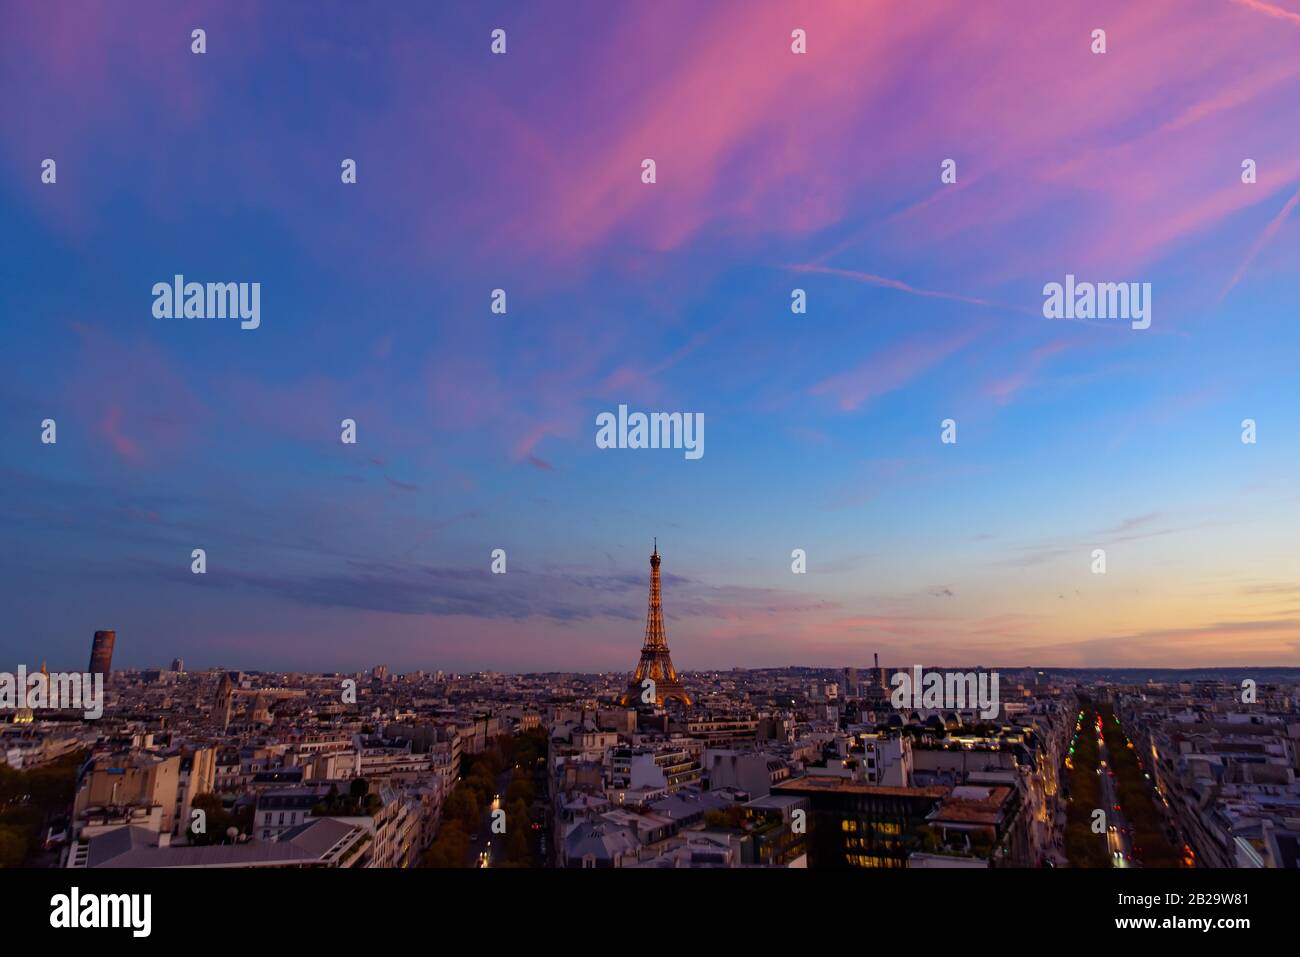 Eiffelturm bei Sonnenuntergang mit farbenfrohem Himmel und Wolken, Paris, Frankreich Stockfoto